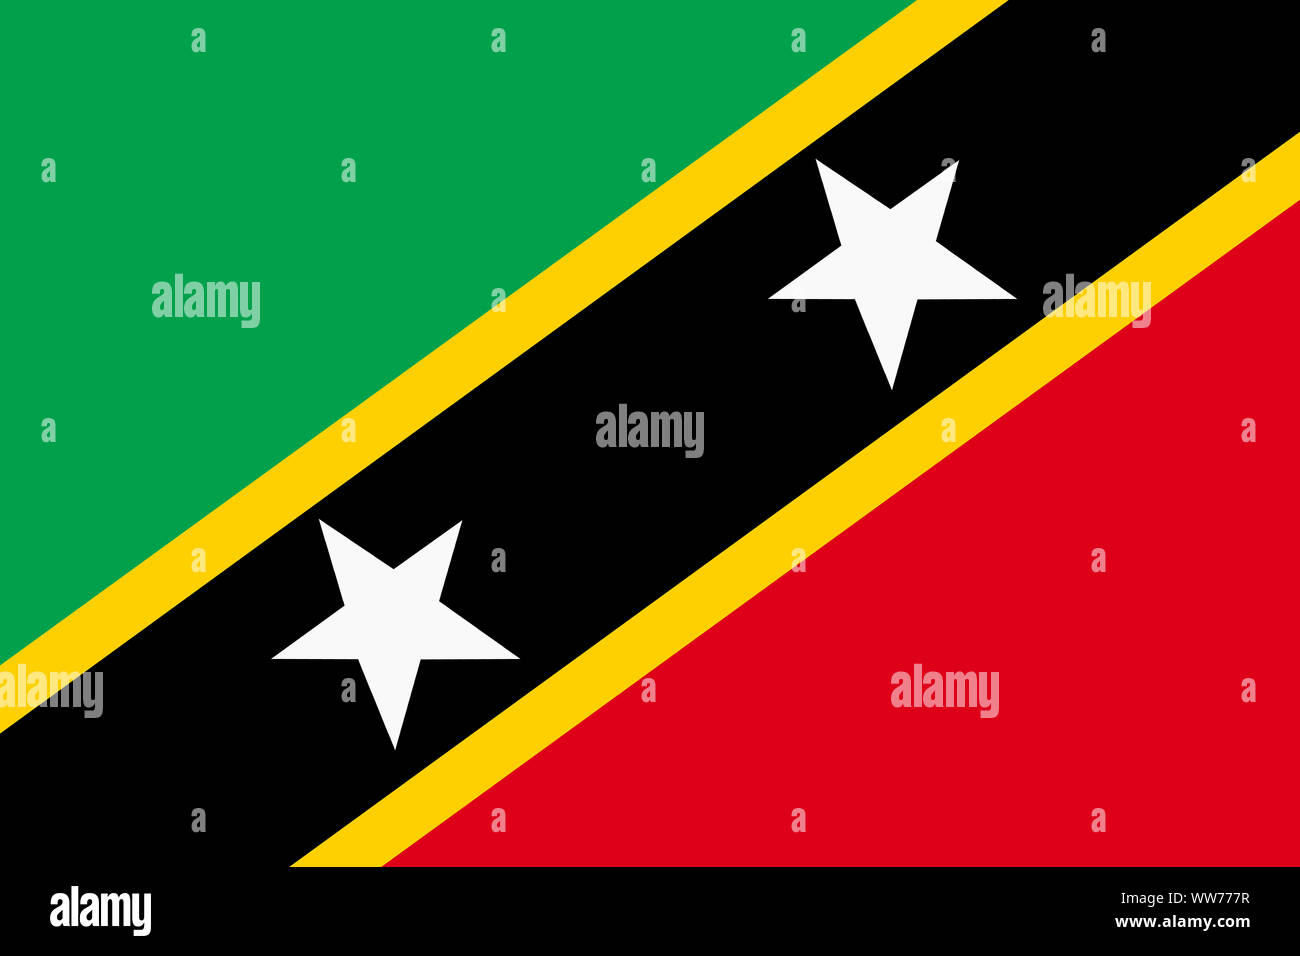 Ein Saint Kitts und Nevis Flagge Hintergrundbild rot grün gelb diagonale  Streifen weiße Sterne Stockfotografie - Alamy